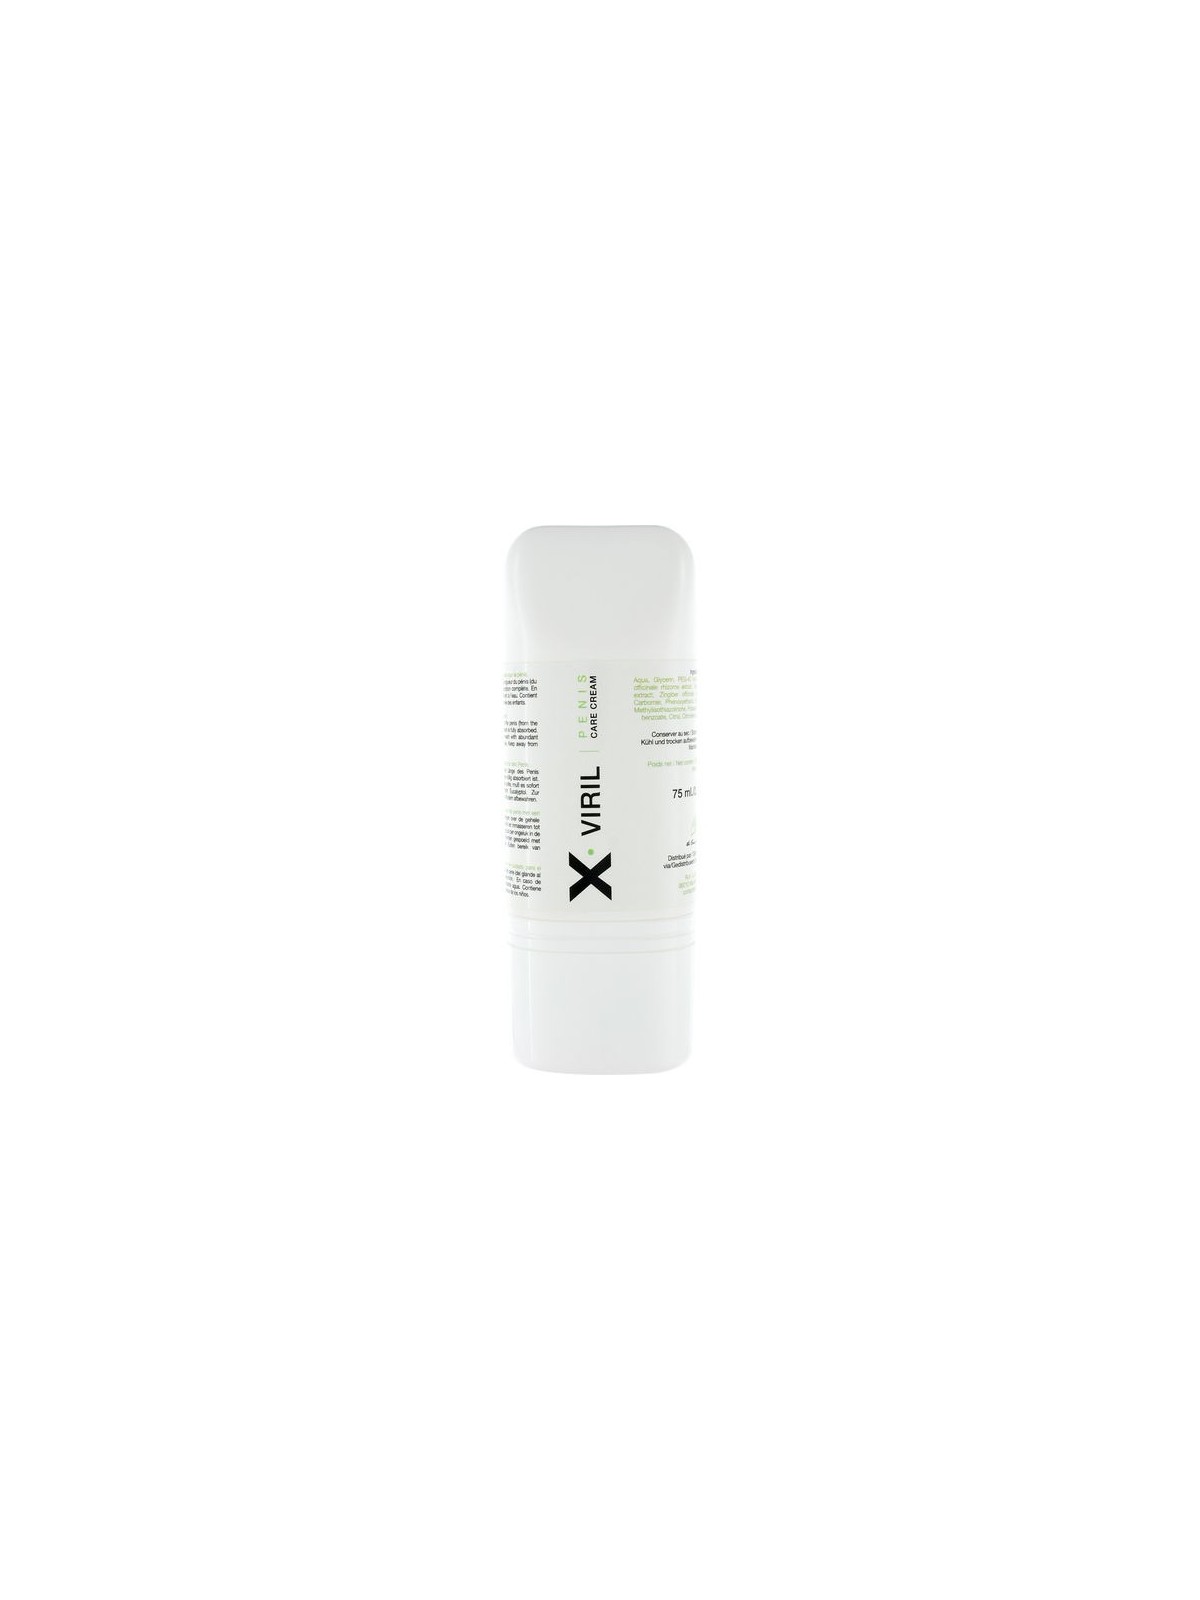 X Viril Crema Cuidado Para El Pene - Comprar Potenciador erección Ruf - Potenciadores de erección (1)